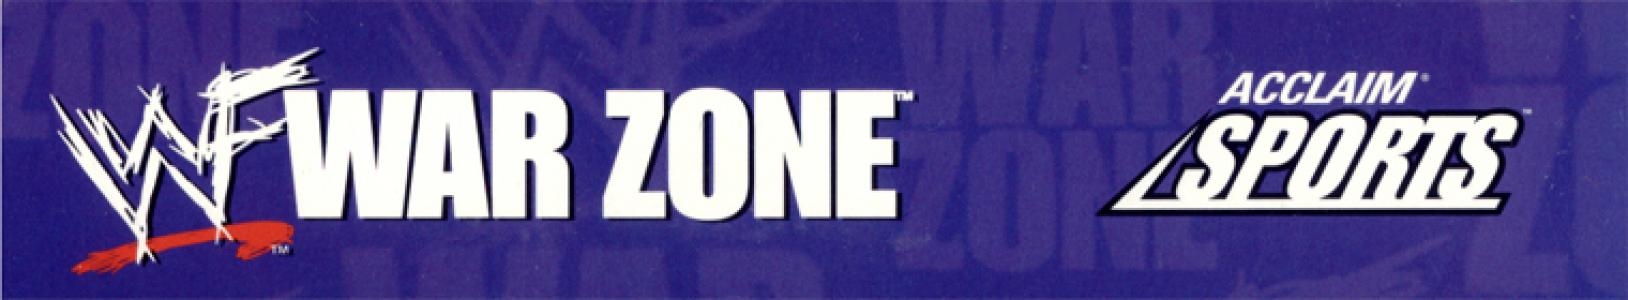 WWF War Zone banner